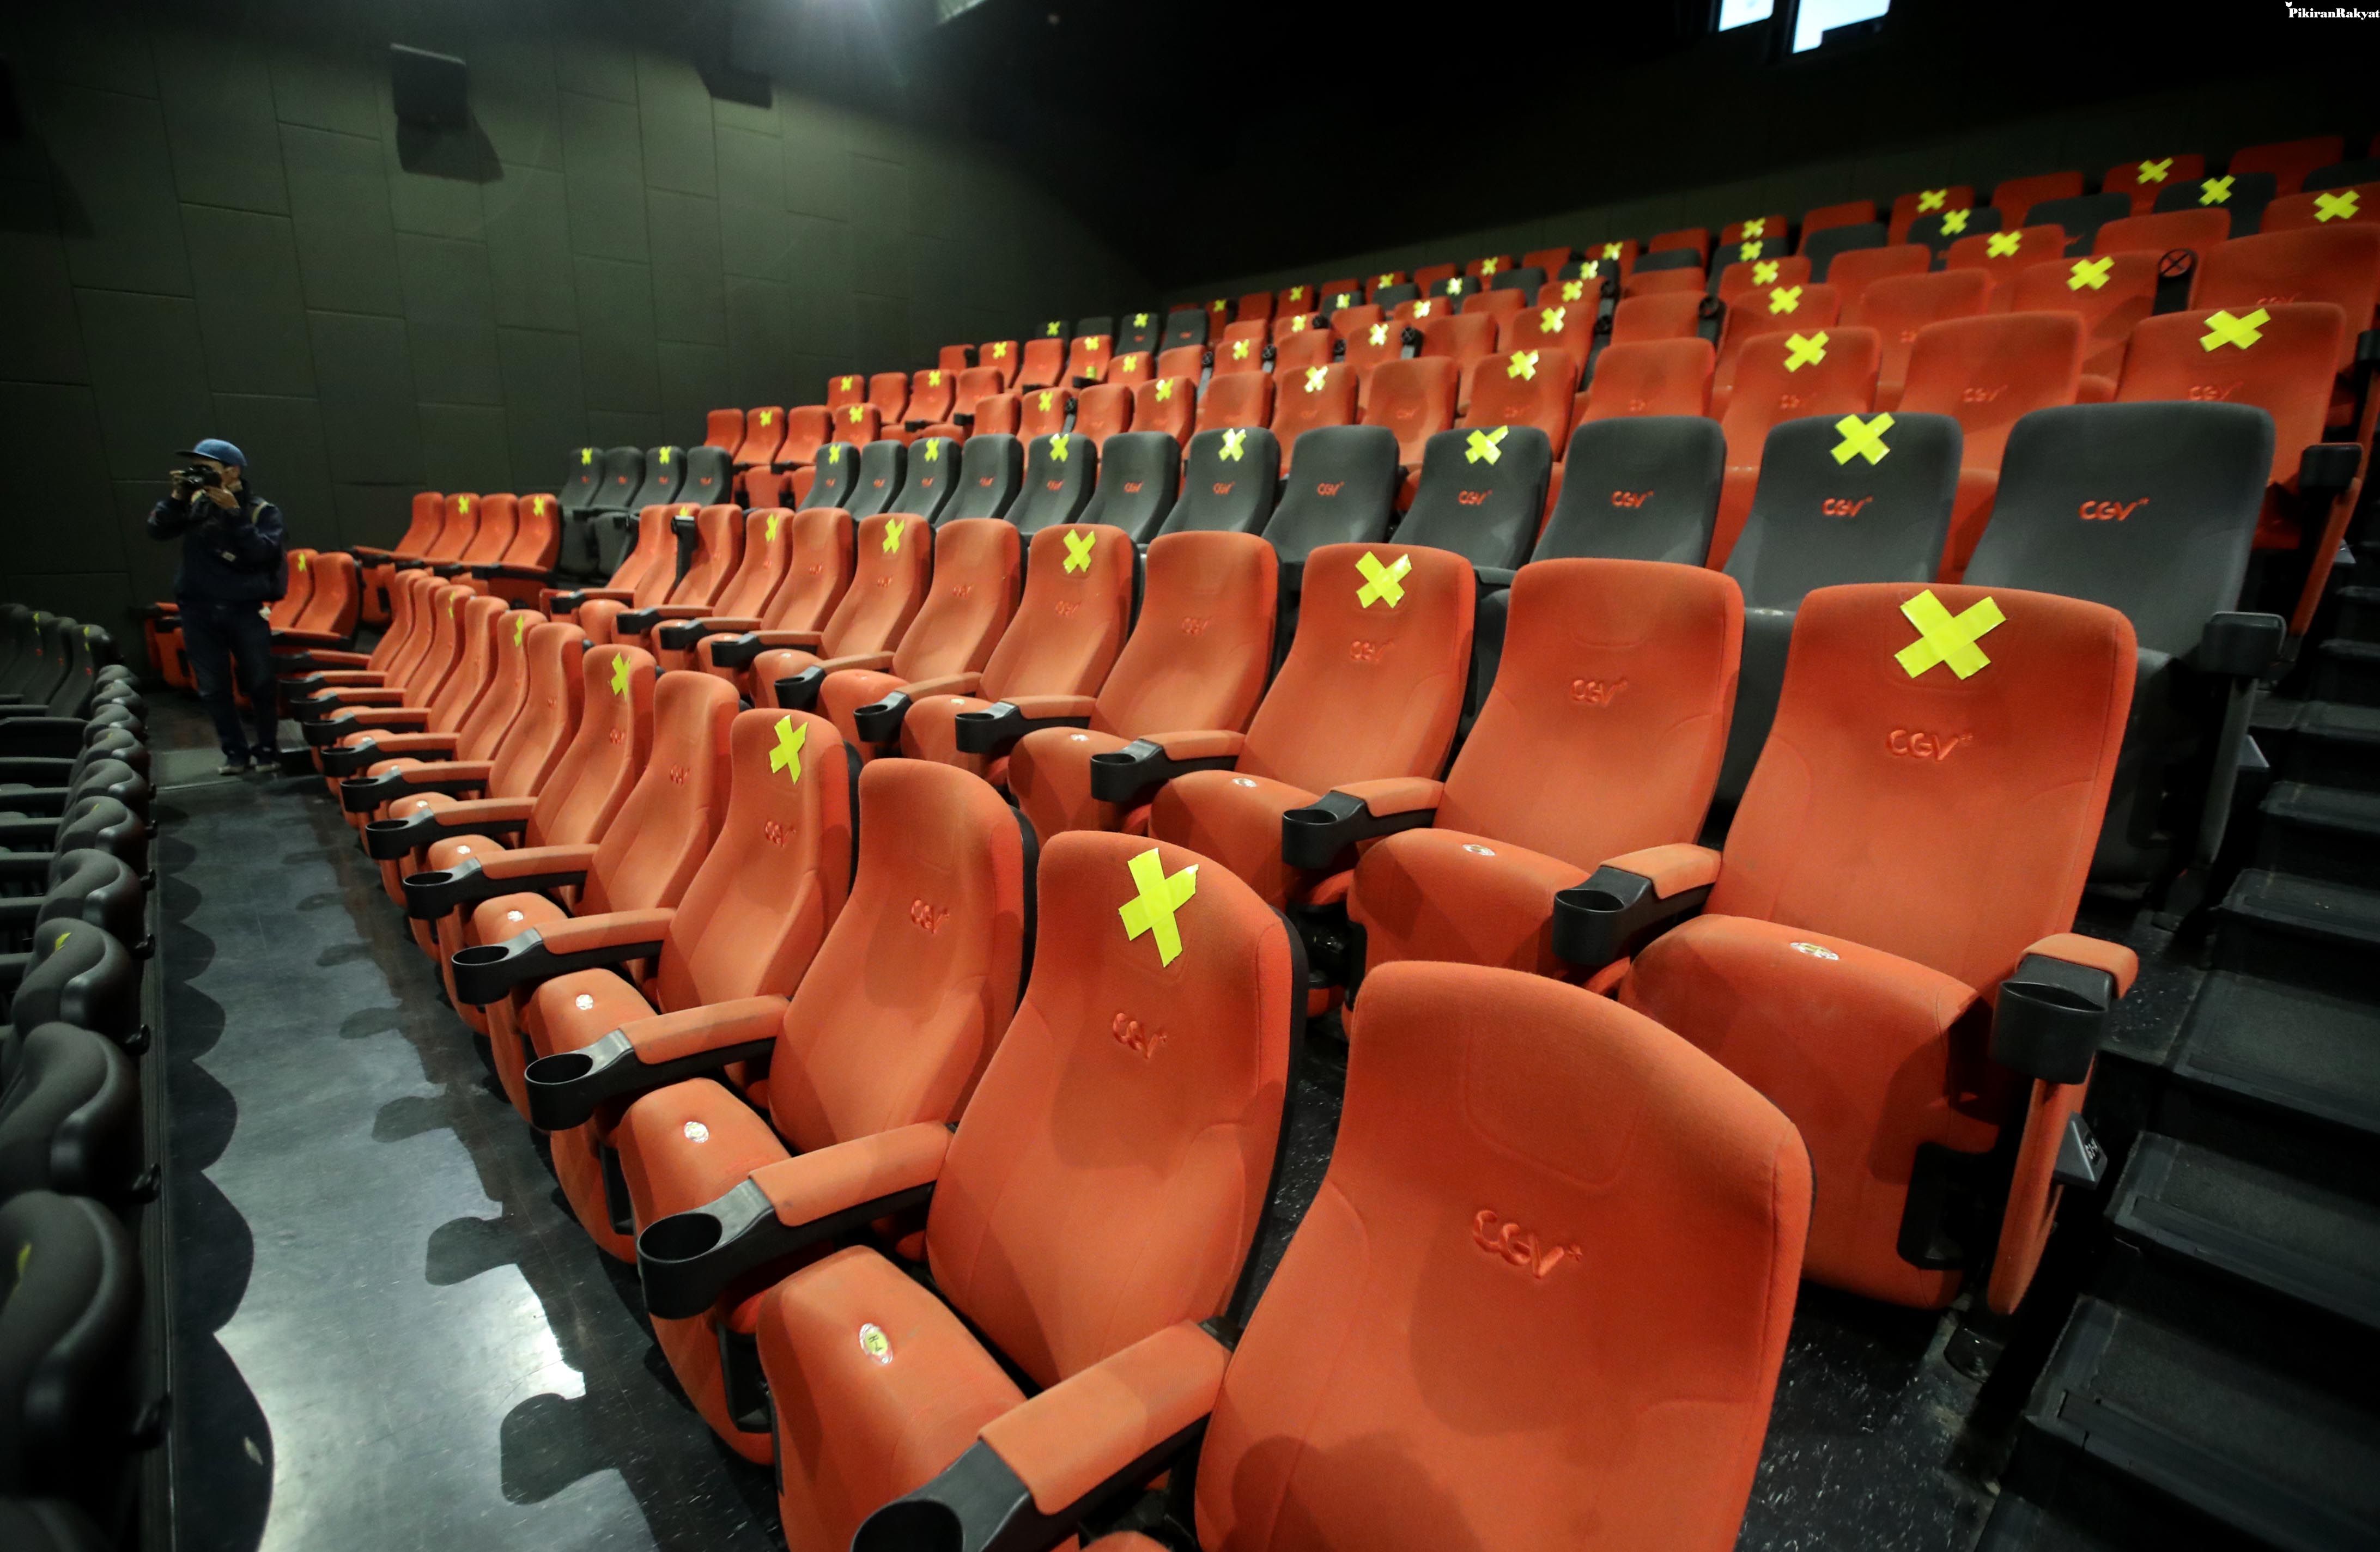 Bioskop Bandung Kembali Dibuka Untuk Umum 